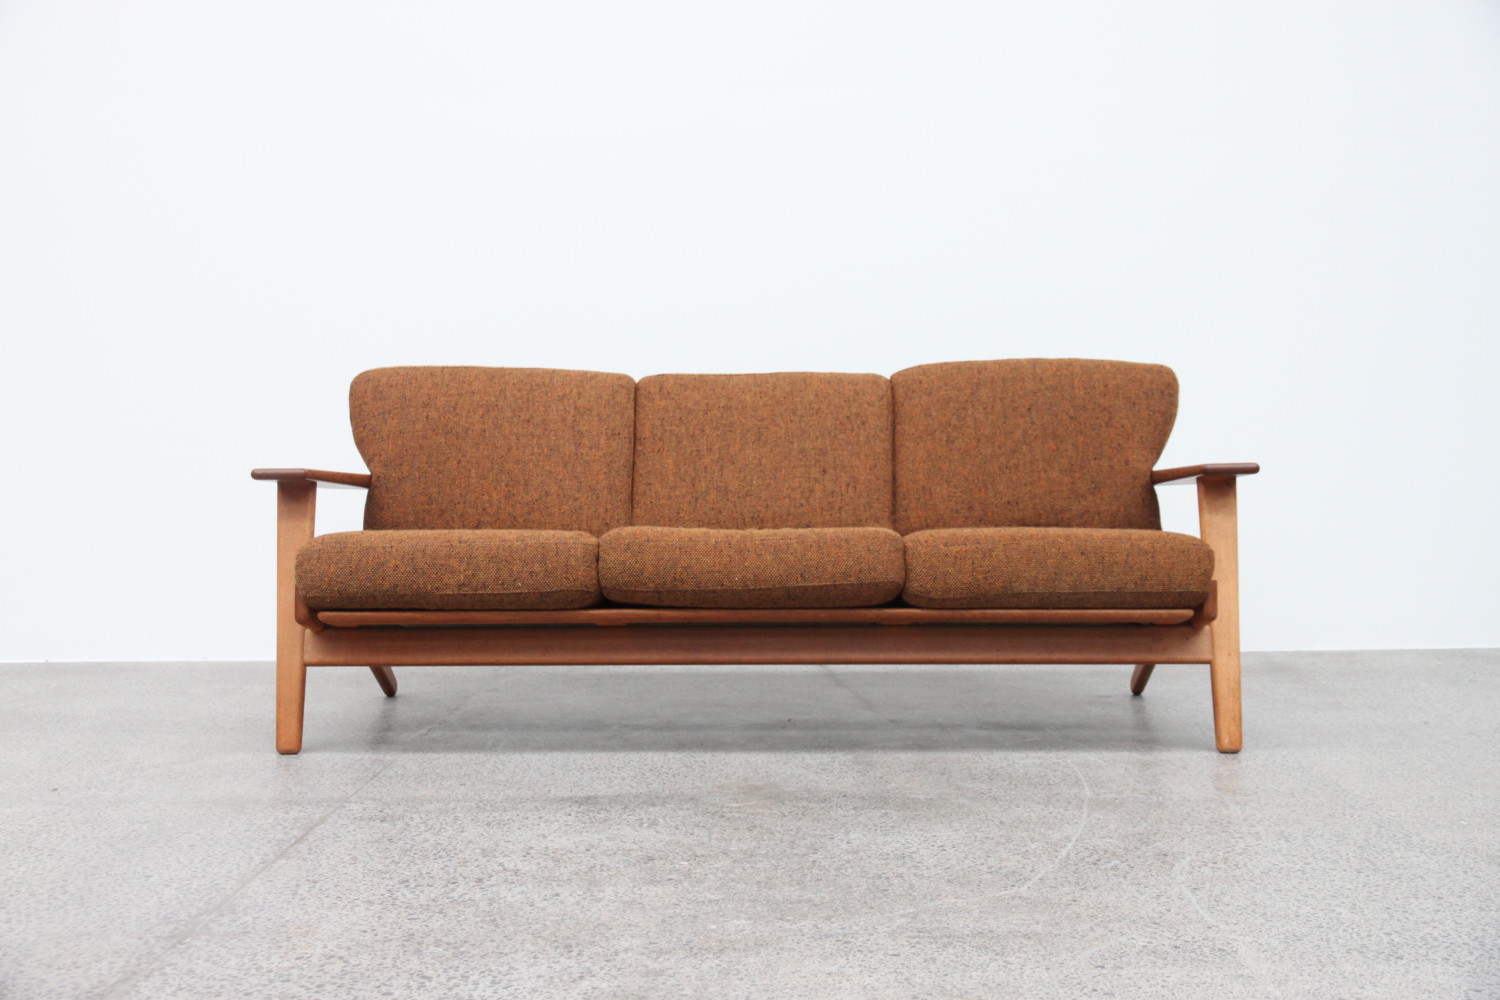 Plank sofa by Hans Wegner